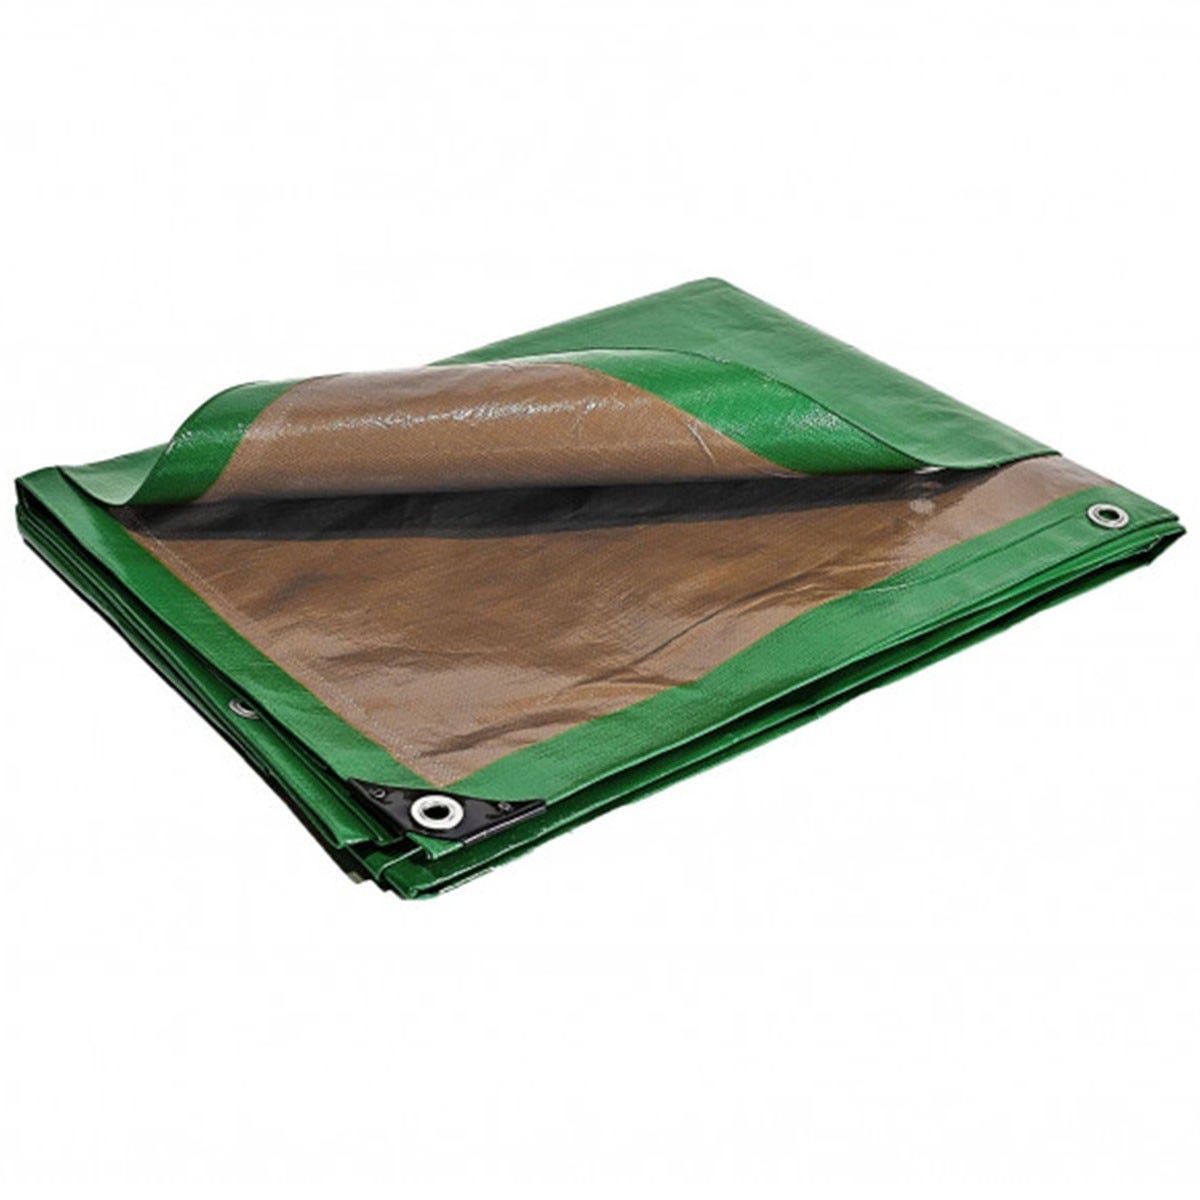 Bâche plastique 2x3 m étanche traitée anti UV verte et marron 250g/m² - bâche de protection polyéthylène haute qualité 0